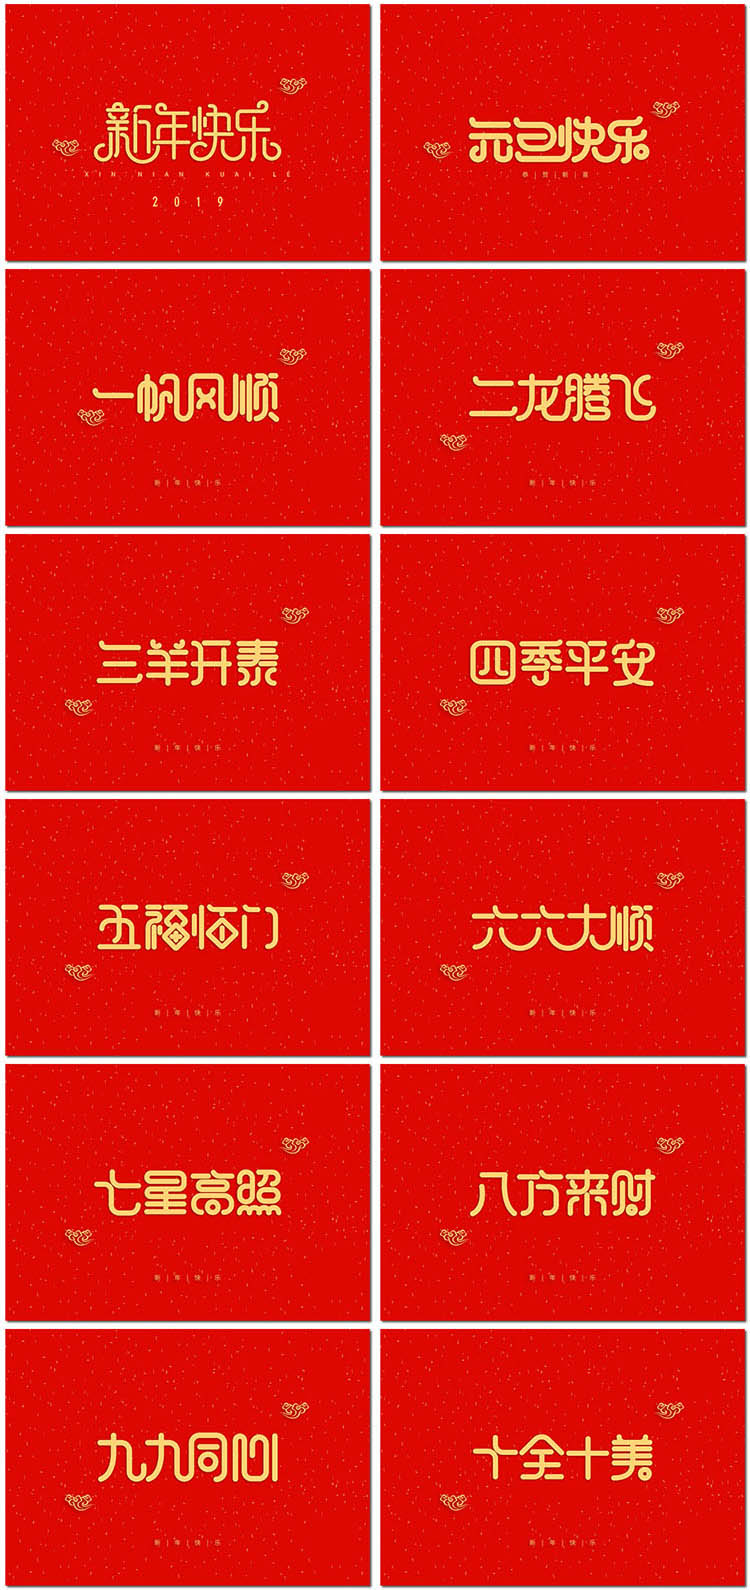 新年快乐新春节祝福语成语艺术字体恭喜发财海报psd设计模板素材